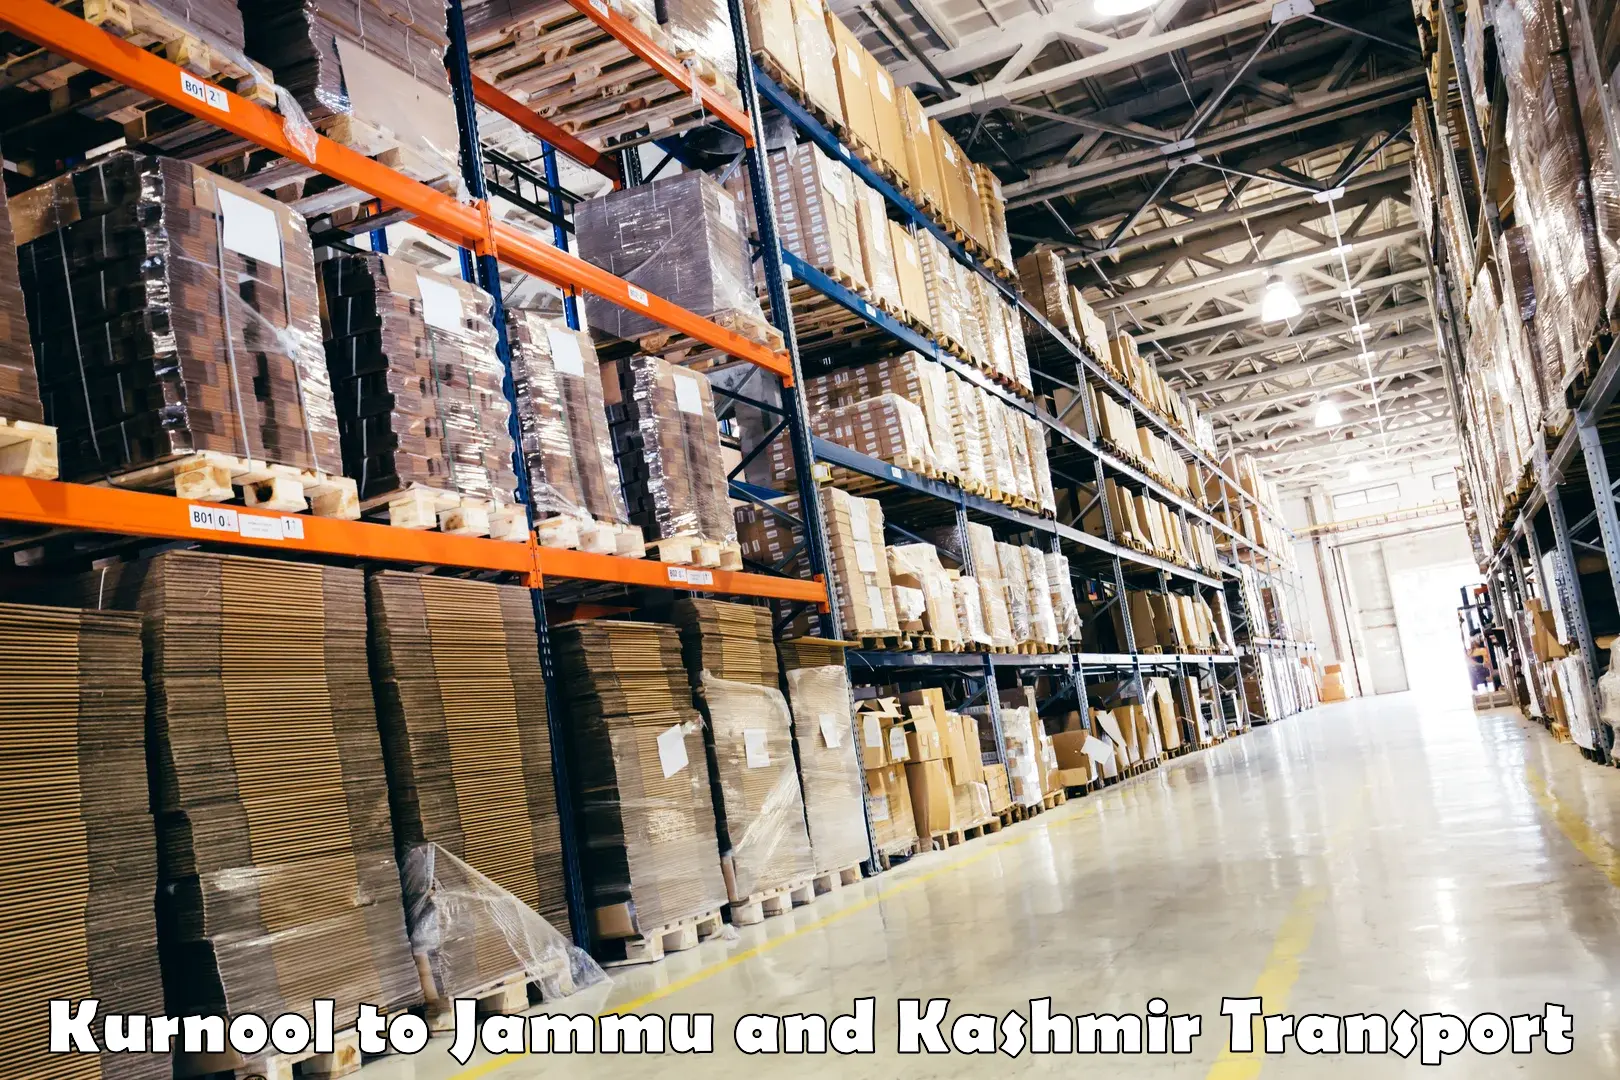 All India transport service Kurnool to Jammu and Kashmir